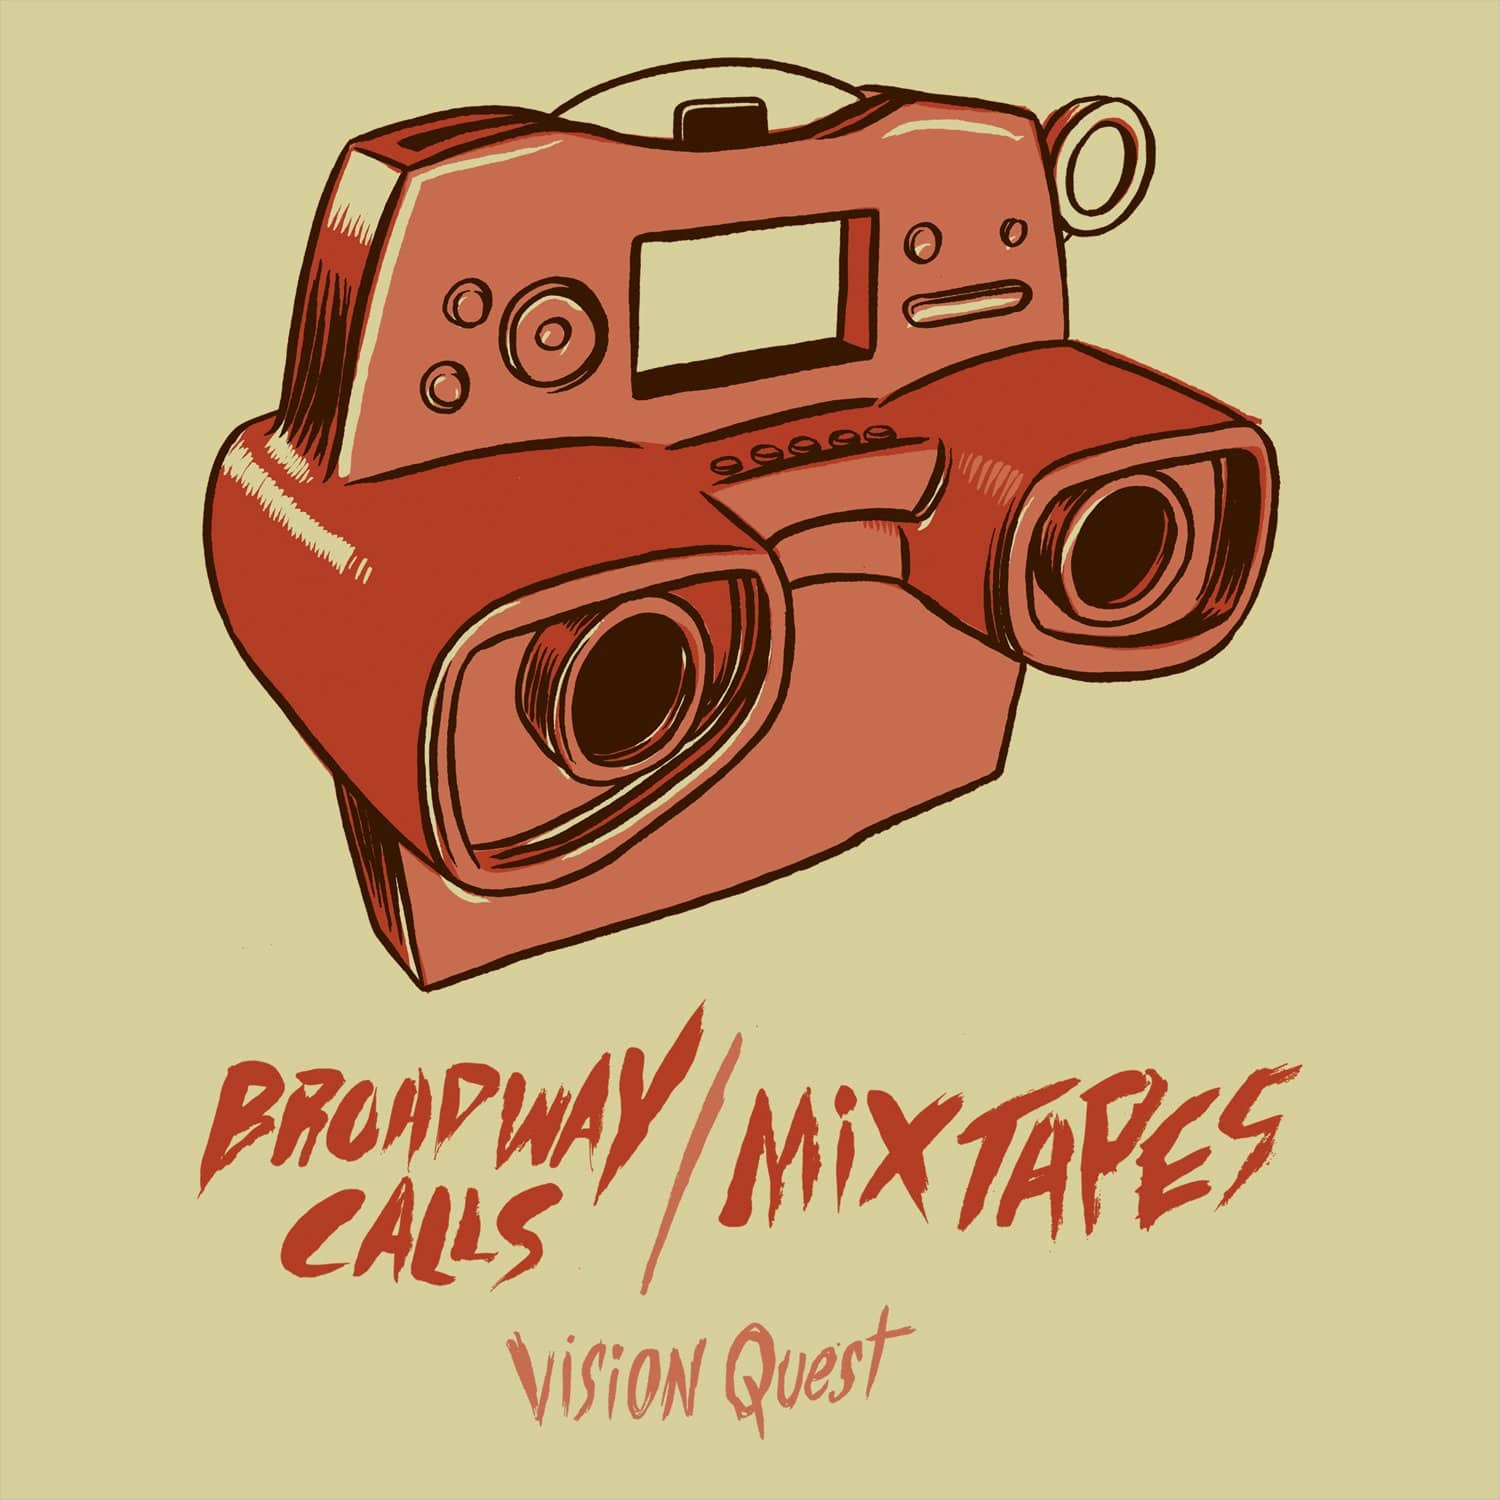 Vision Quest - NO SLEEP RECORDS - Broadway Calls / Mixtapes